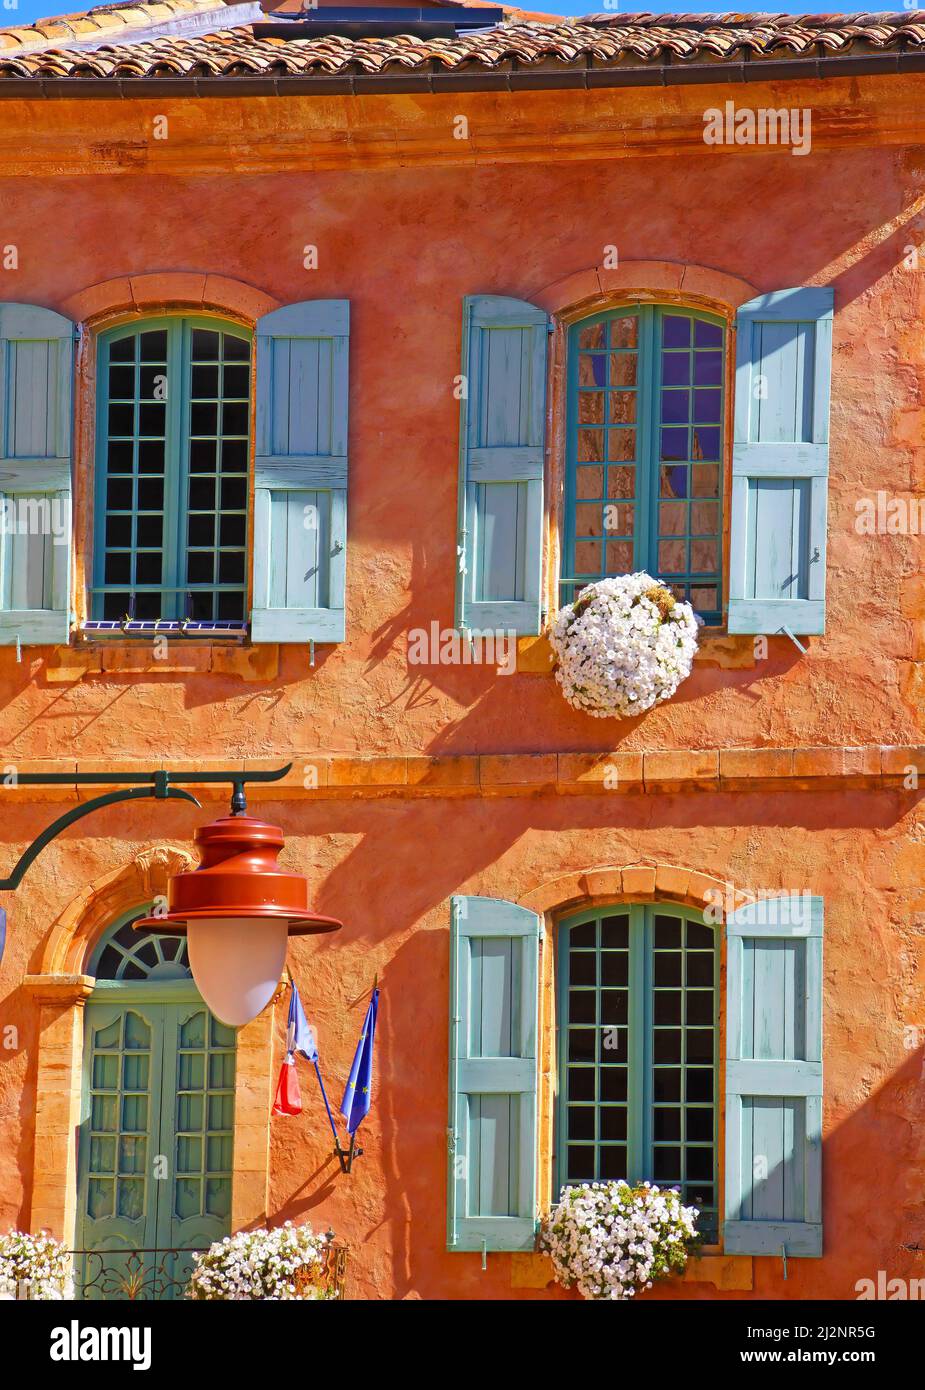 Vue sur la façade traditionnelle de la maison murale ocre en pierre naturelle, arrangements floraux, volets en bois de la vieille fenêtre - Hôtel de ville Roussillon, France Banque D'Images